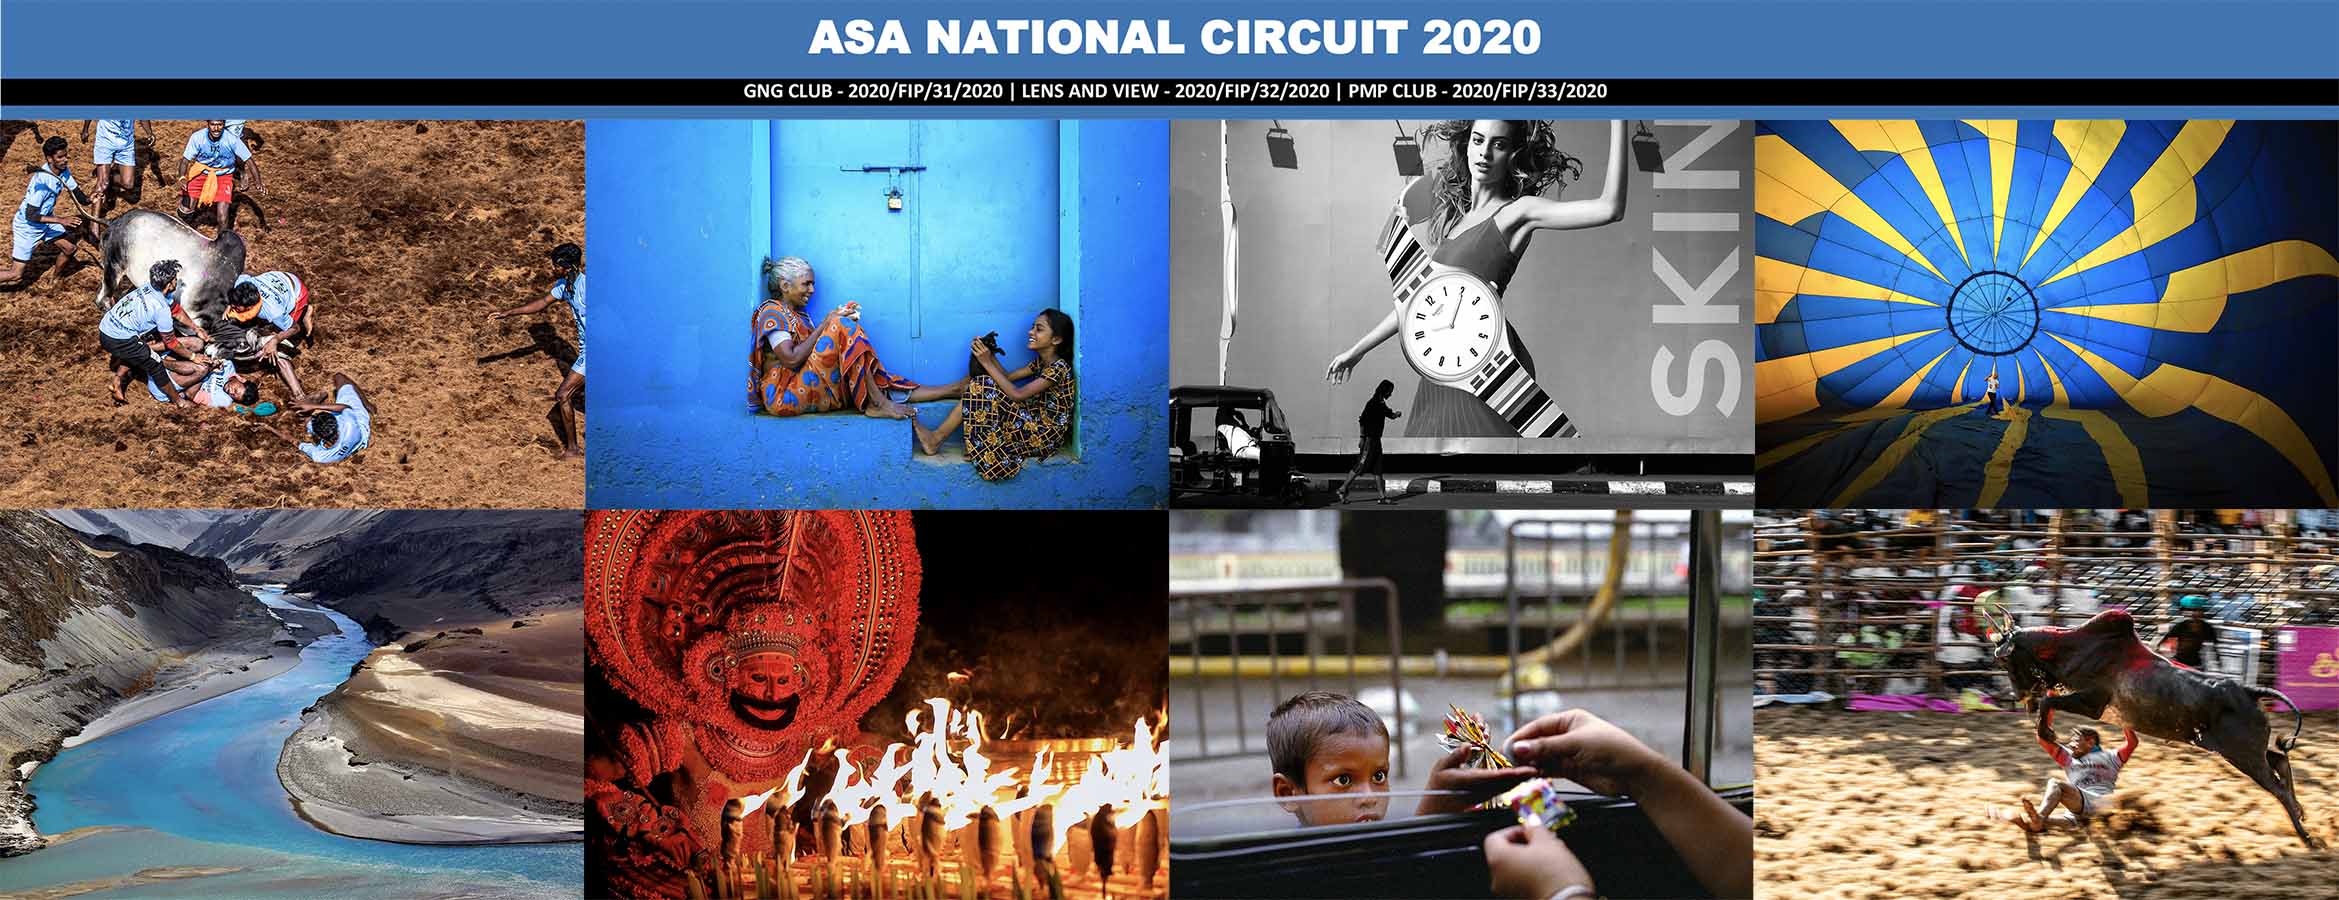 ASA National Circuit-2020